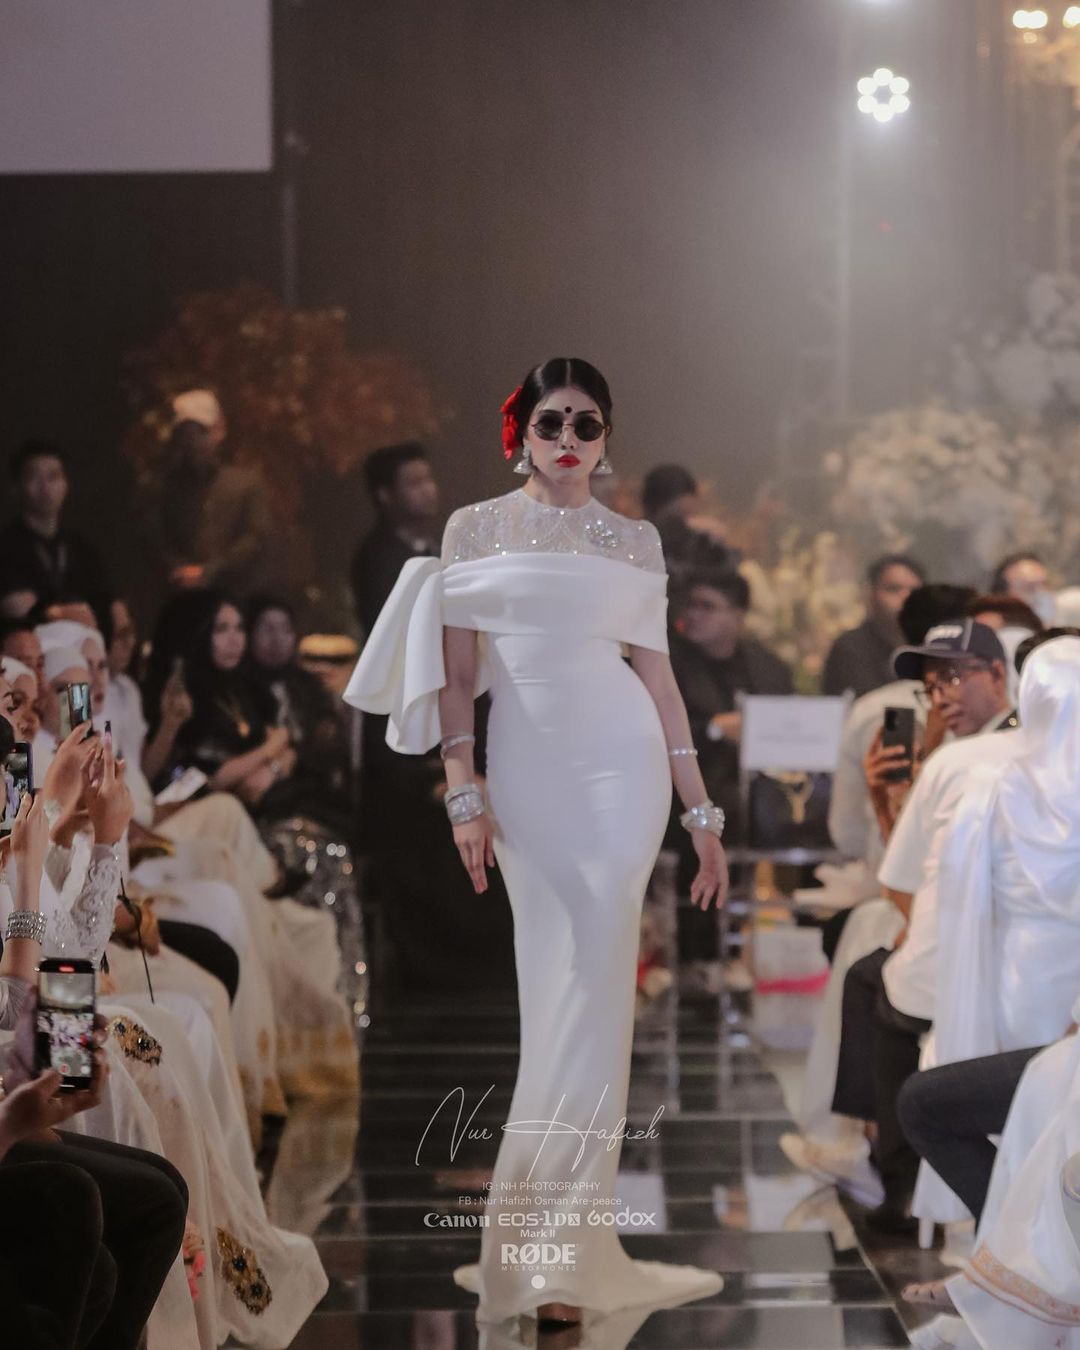 Alia Gangubai's inspired look at the Malaysia Fashion Show.